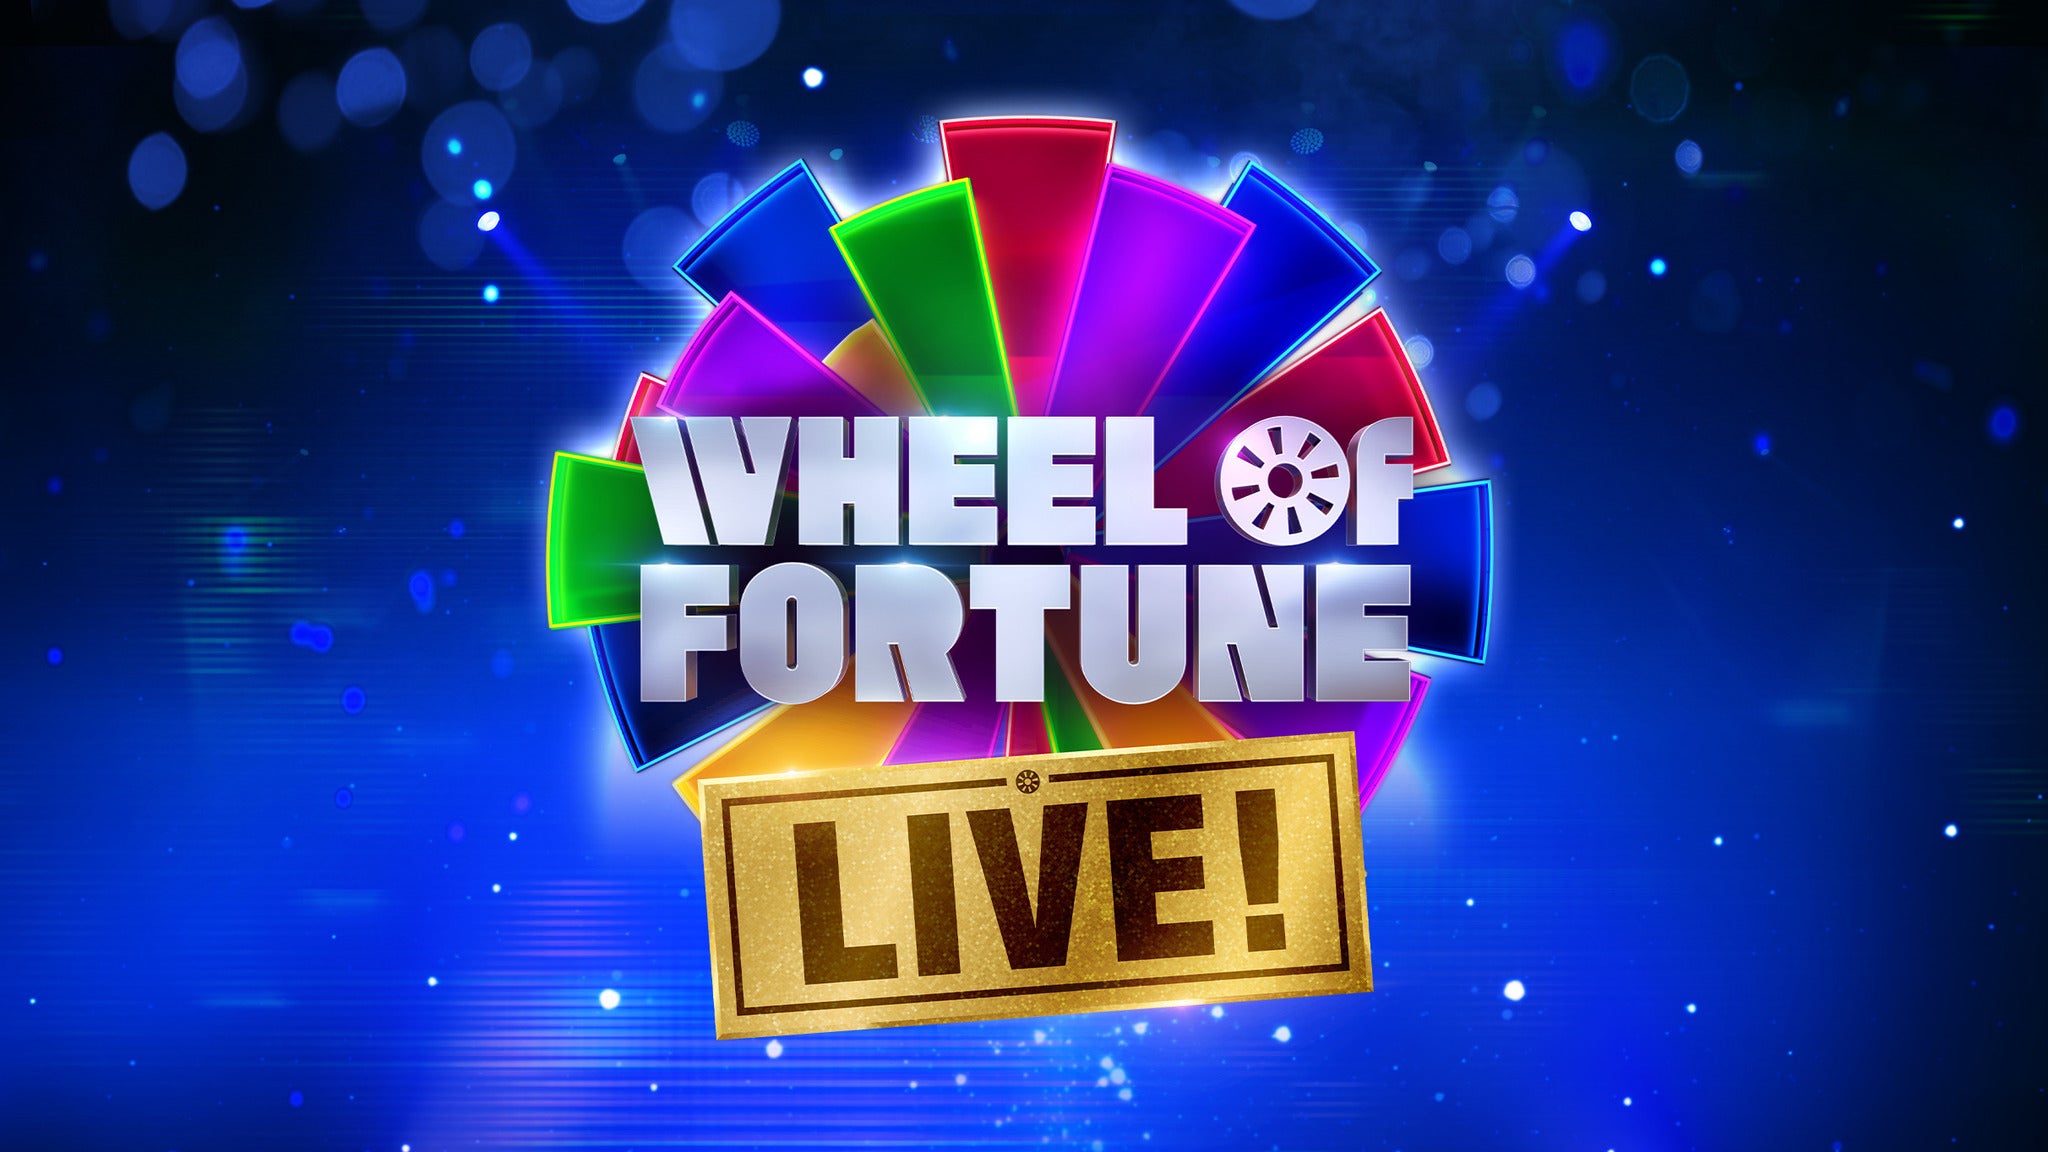 Wheel of Fortune Live! at Redding Civic Auditorium